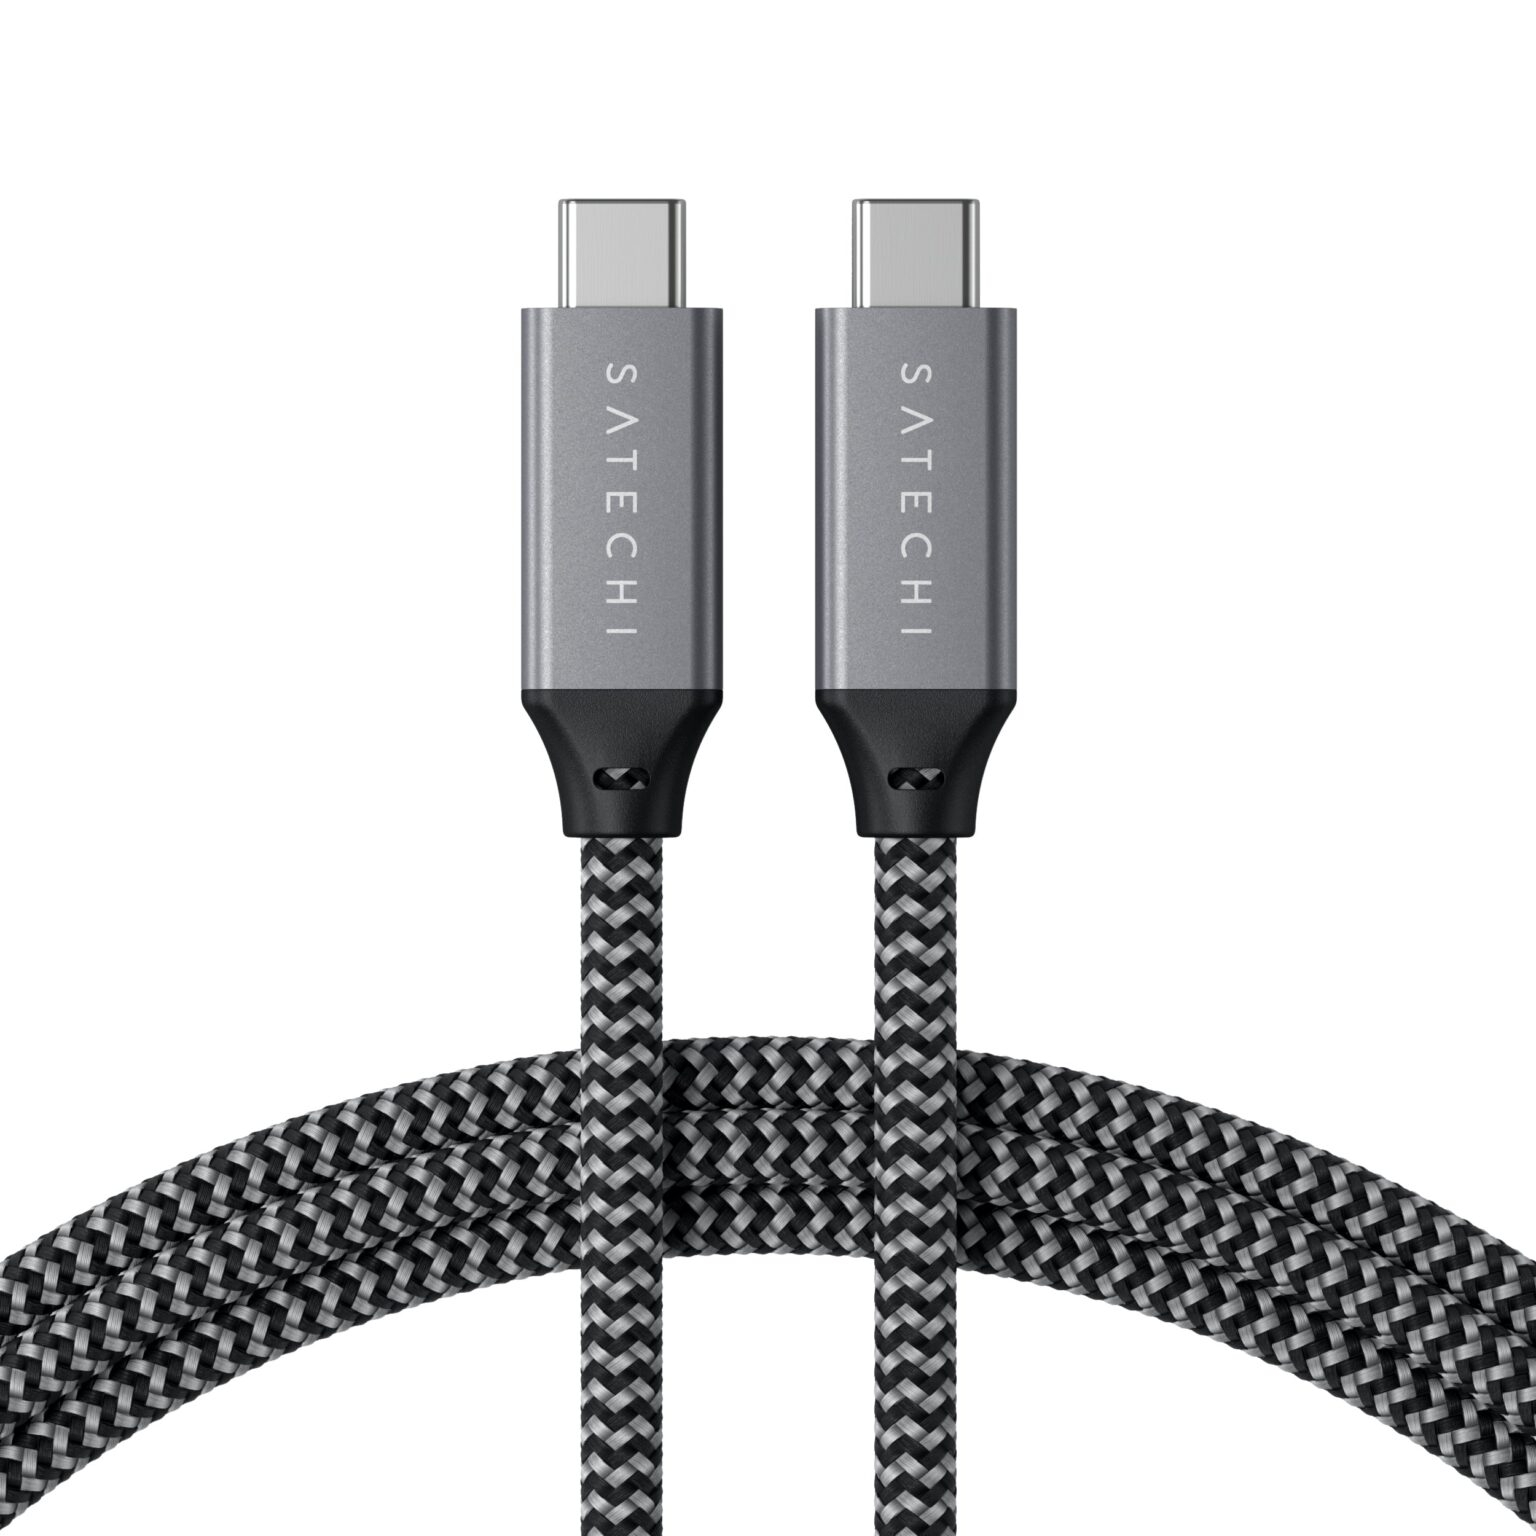 Кабель Satechi USB4 C to C длина 80 см. Цвет: серый космос кабель satechi usb4 pro cable длина 1 2м цвет серый космос